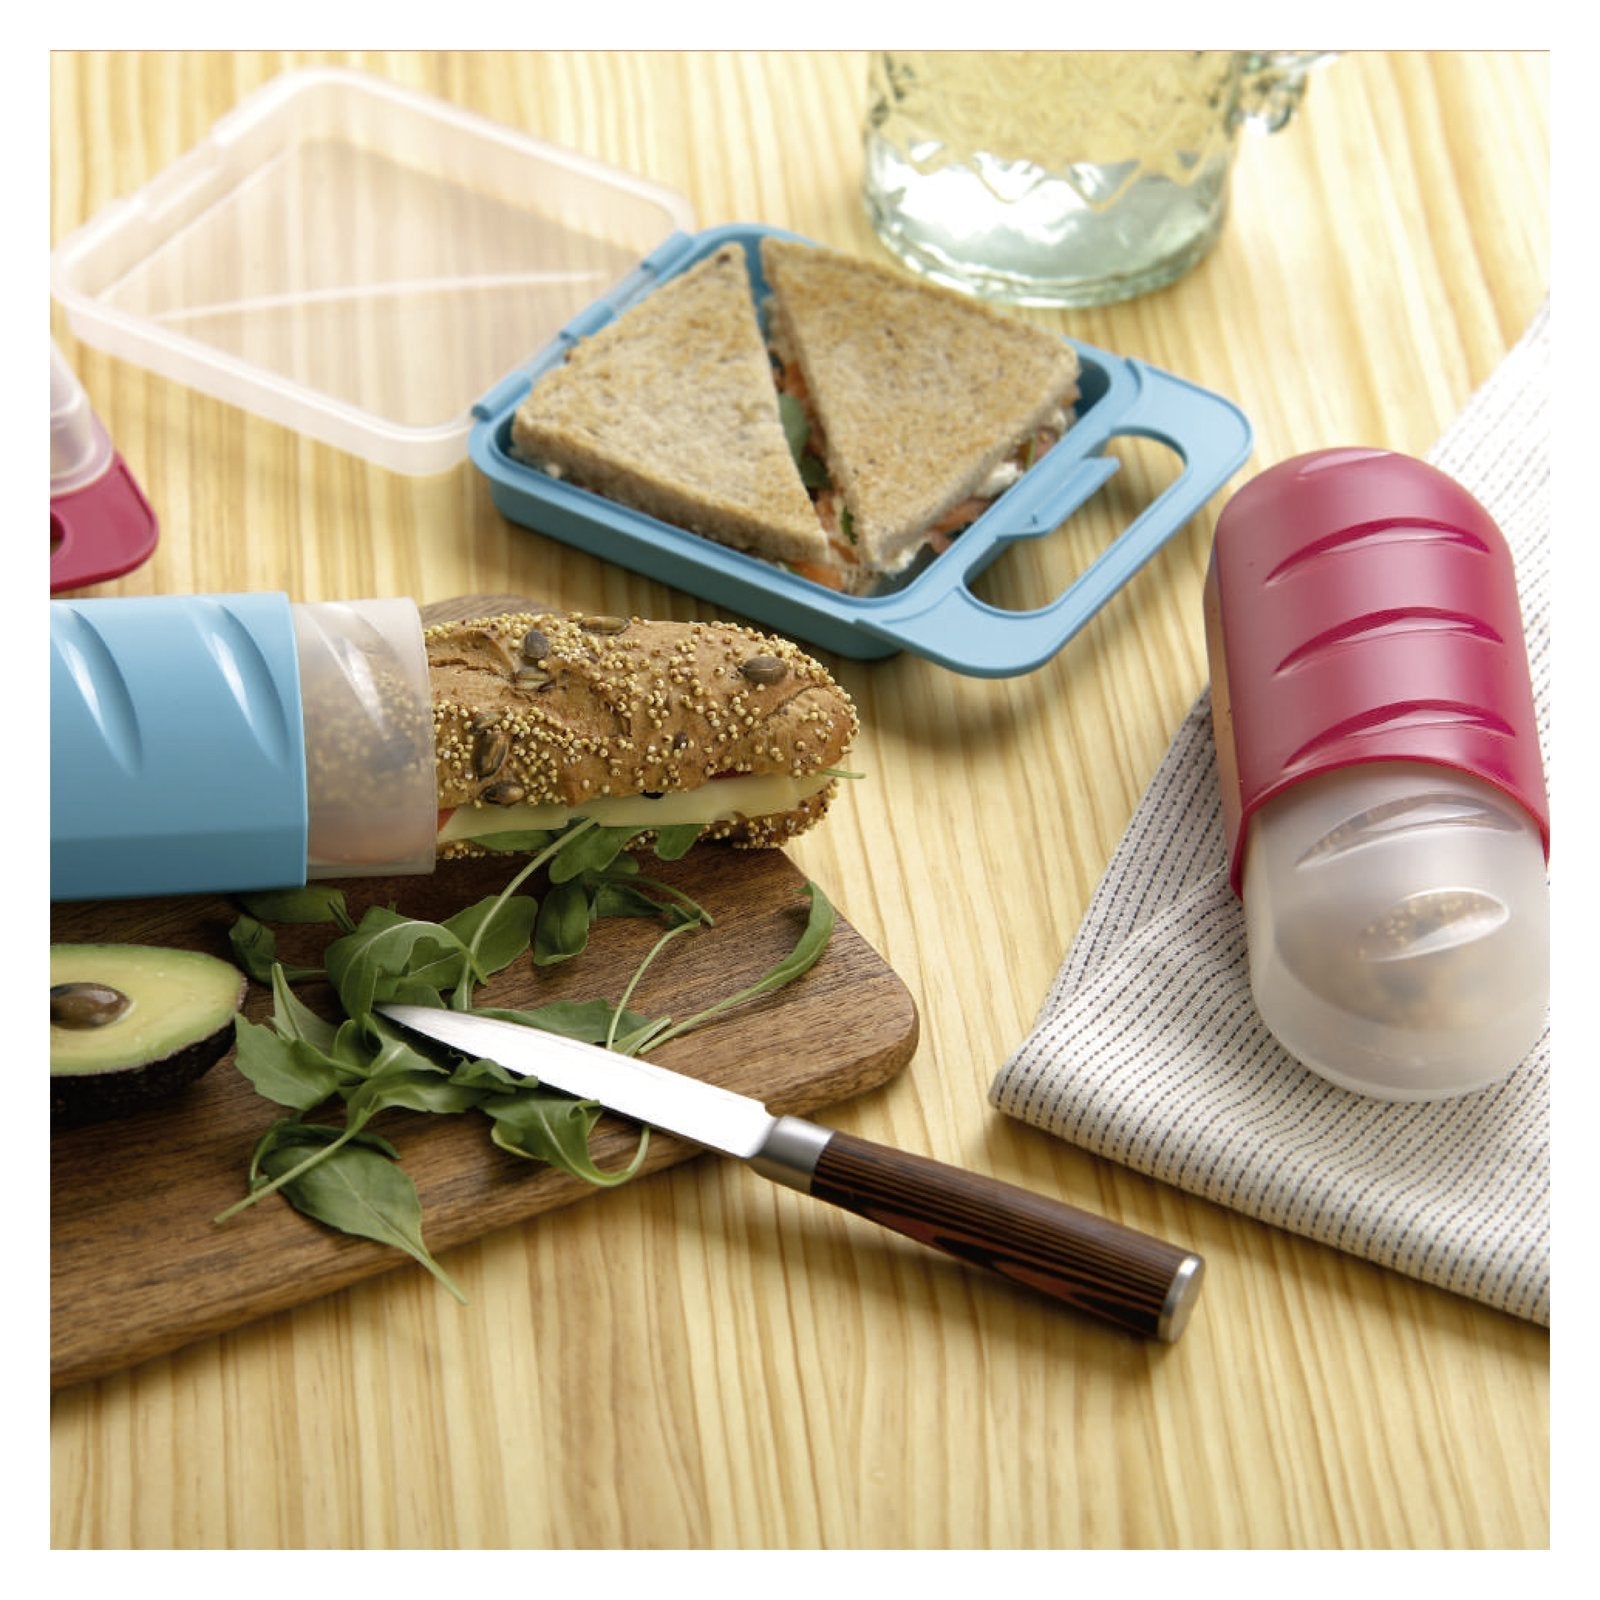 TATAY 1167100 - Porta Sandwich Reutilizable y Ecológico Libre de BPA